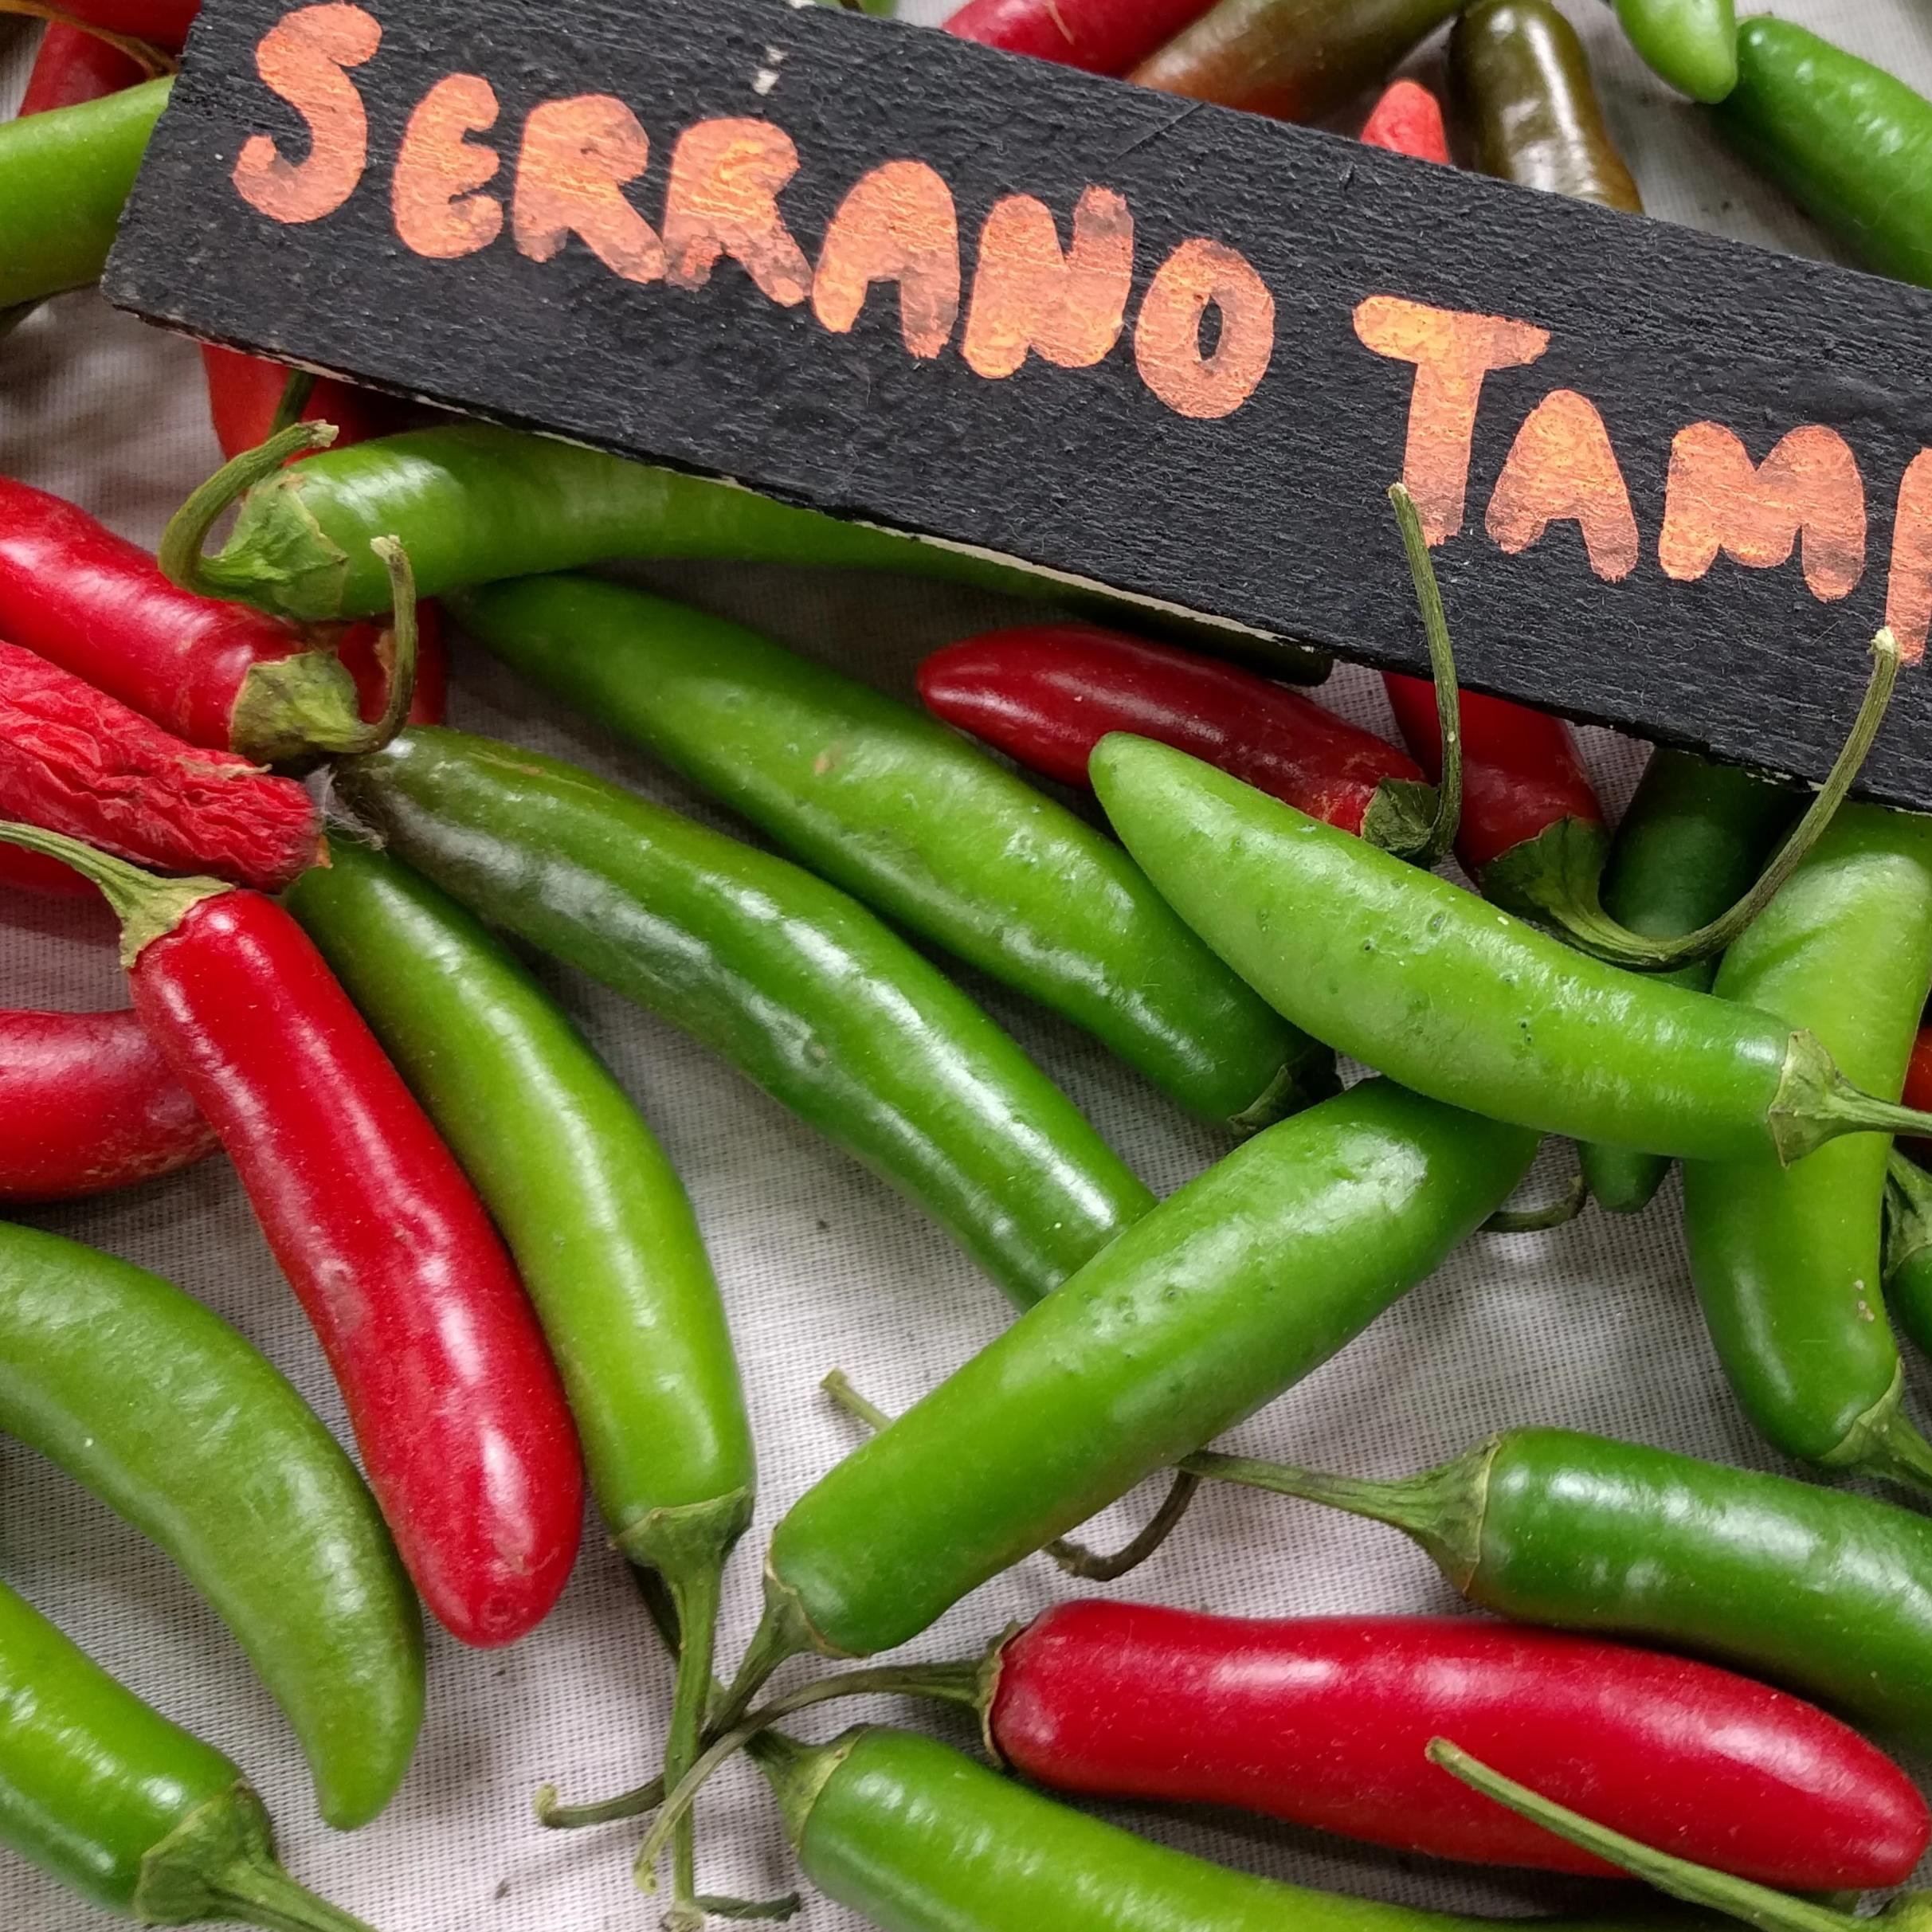 Serrano Tampiqueño Pepper Seeds